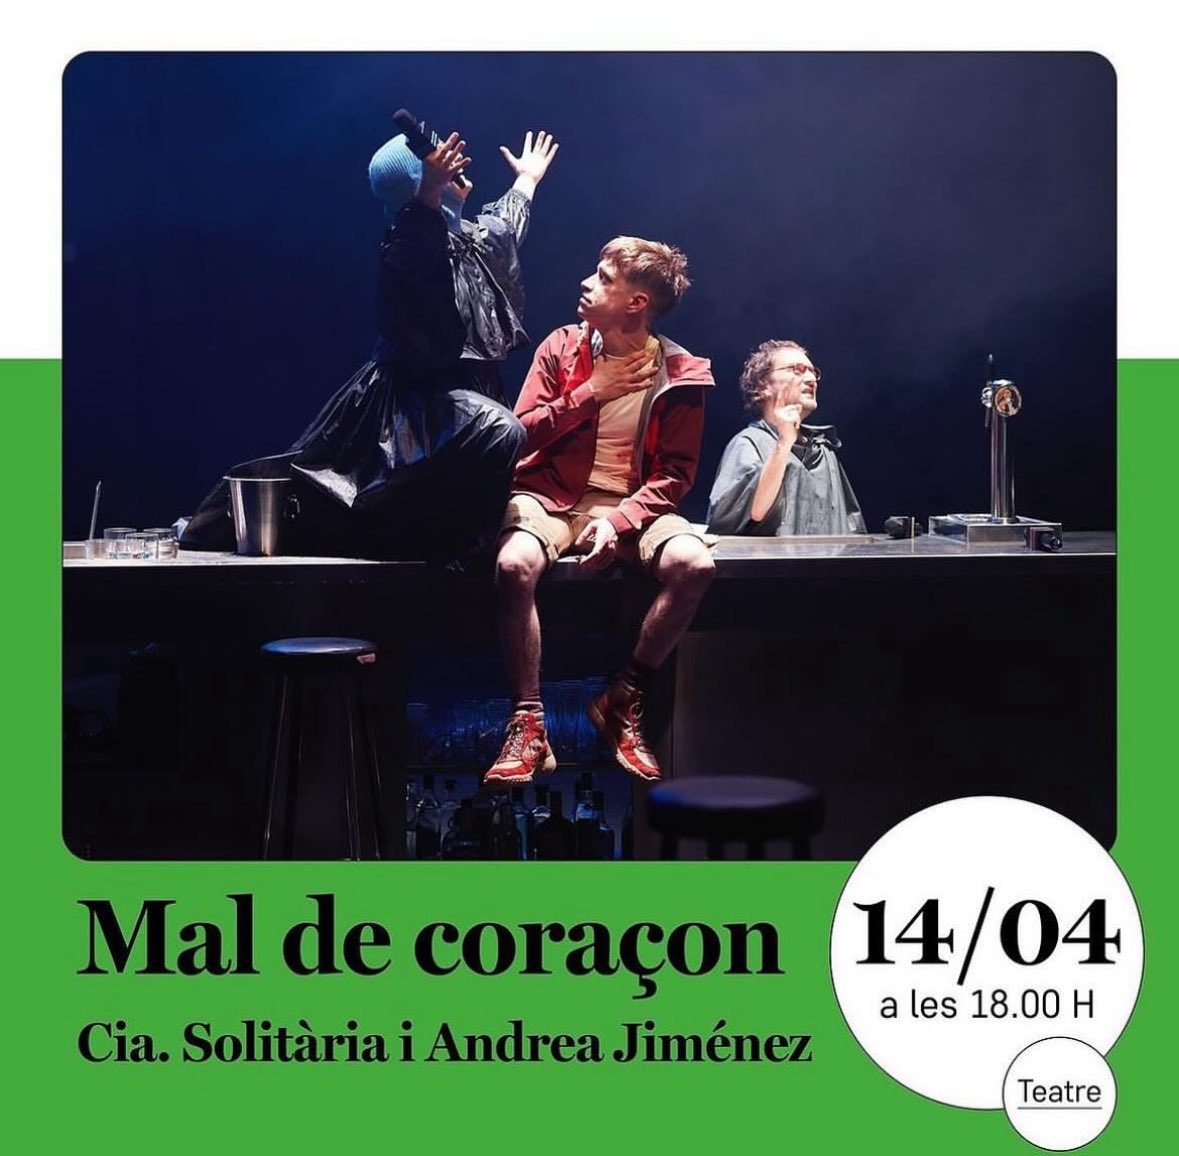 CAP DE SETMANA DE LUXE ‼️ 👉 Música amb @queralt_lahoz @baowatt_produccions 👉 Teatre amb MAL DE CORAÇON @gironescultura Tota la info a teatrebescano.cat